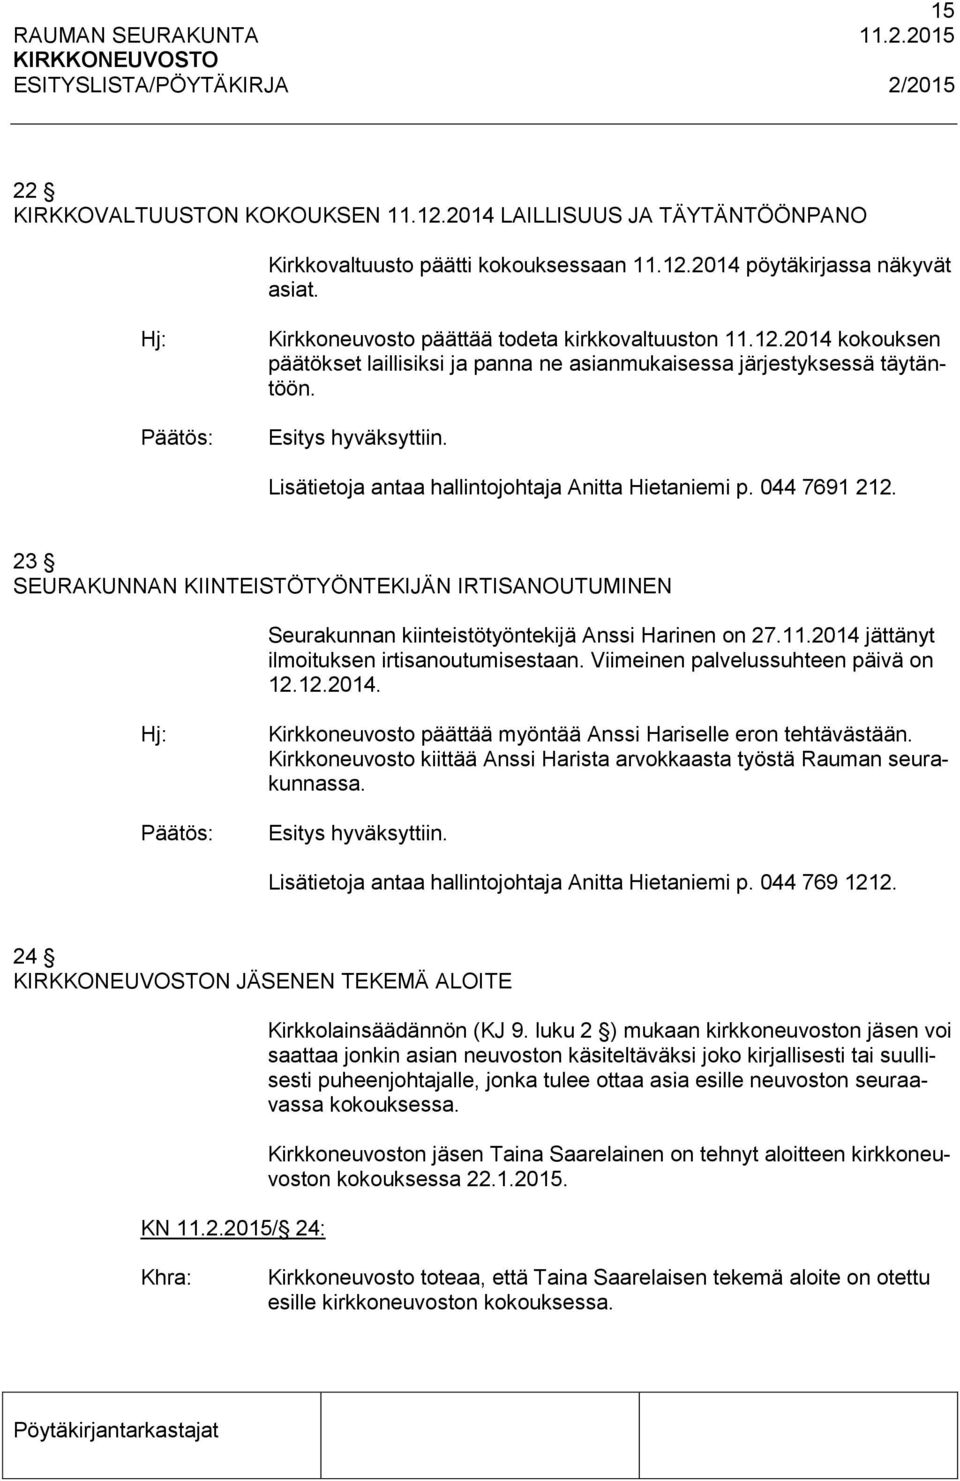 Lisätietoja antaa hallintojohtaja Anitta Hietaniemi p. 044 7691 212. 23 SEURAKUNNAN KIINTEISTÖTYÖNTEKIJÄN IRTISANOUTUMINEN Seurakunnan kiinteistötyöntekijä Anssi Harinen on 27.11.